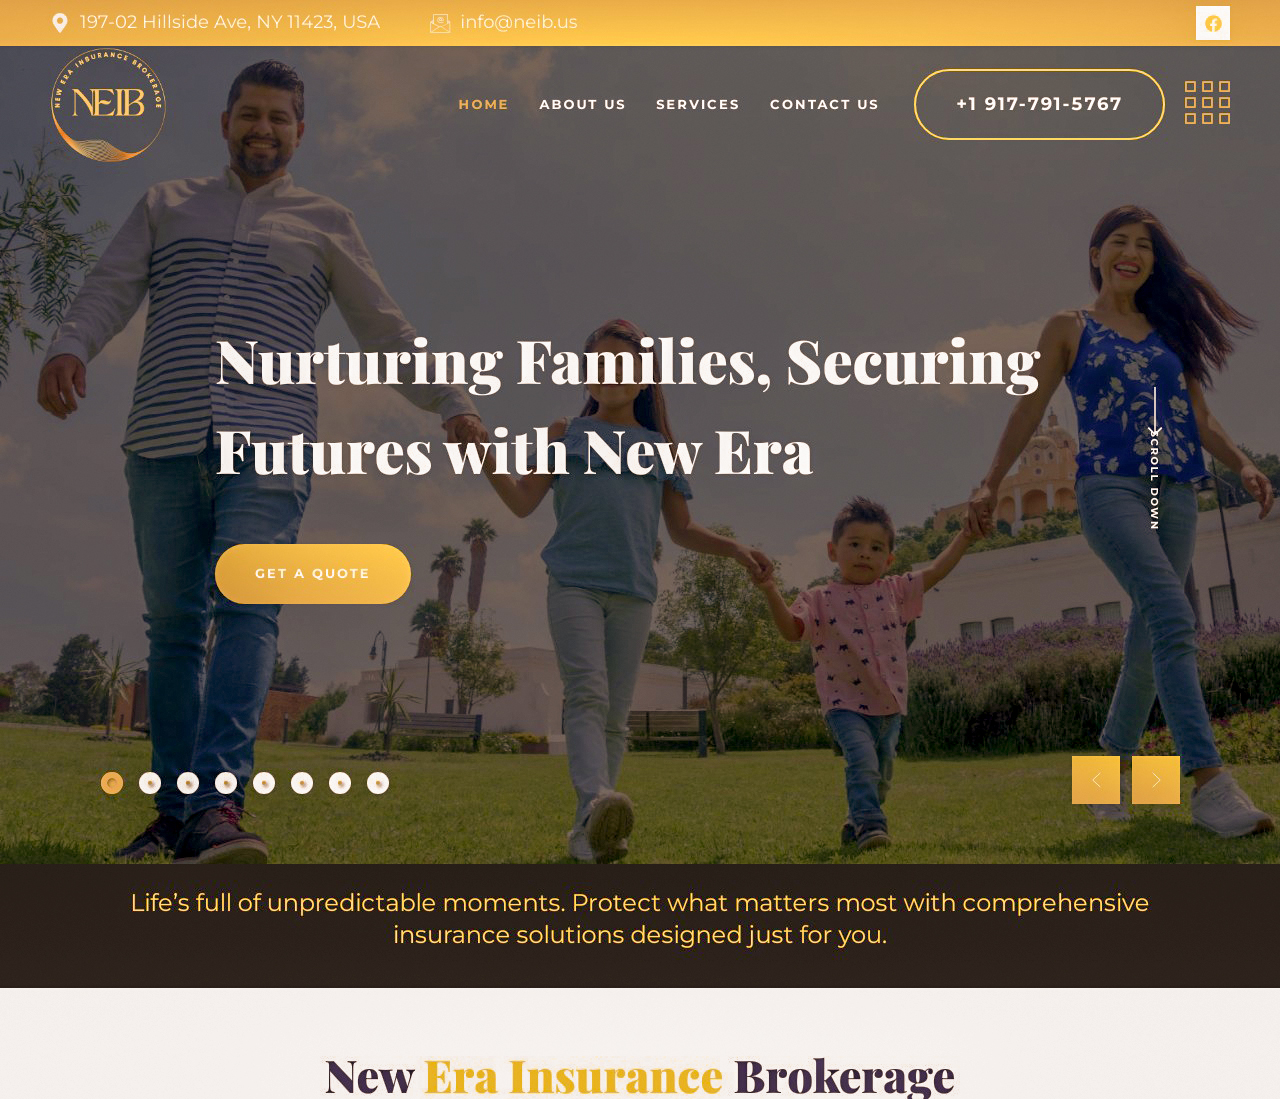 New Era Insurance Brokerage